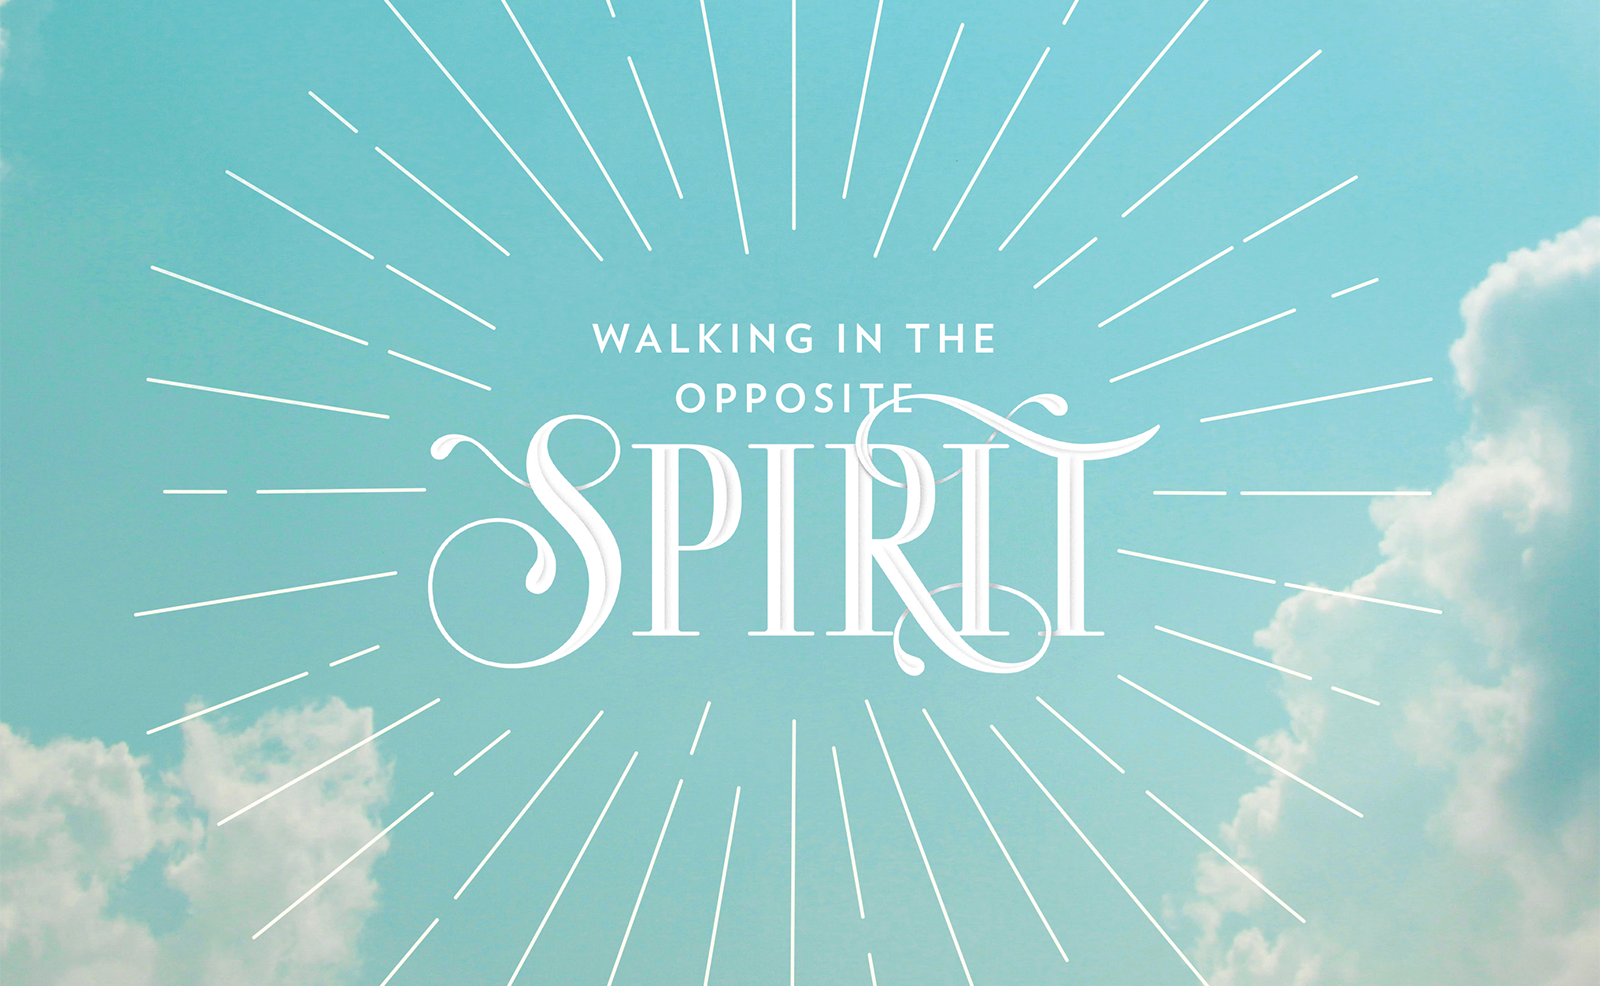 Walking in the Opposite Spirit